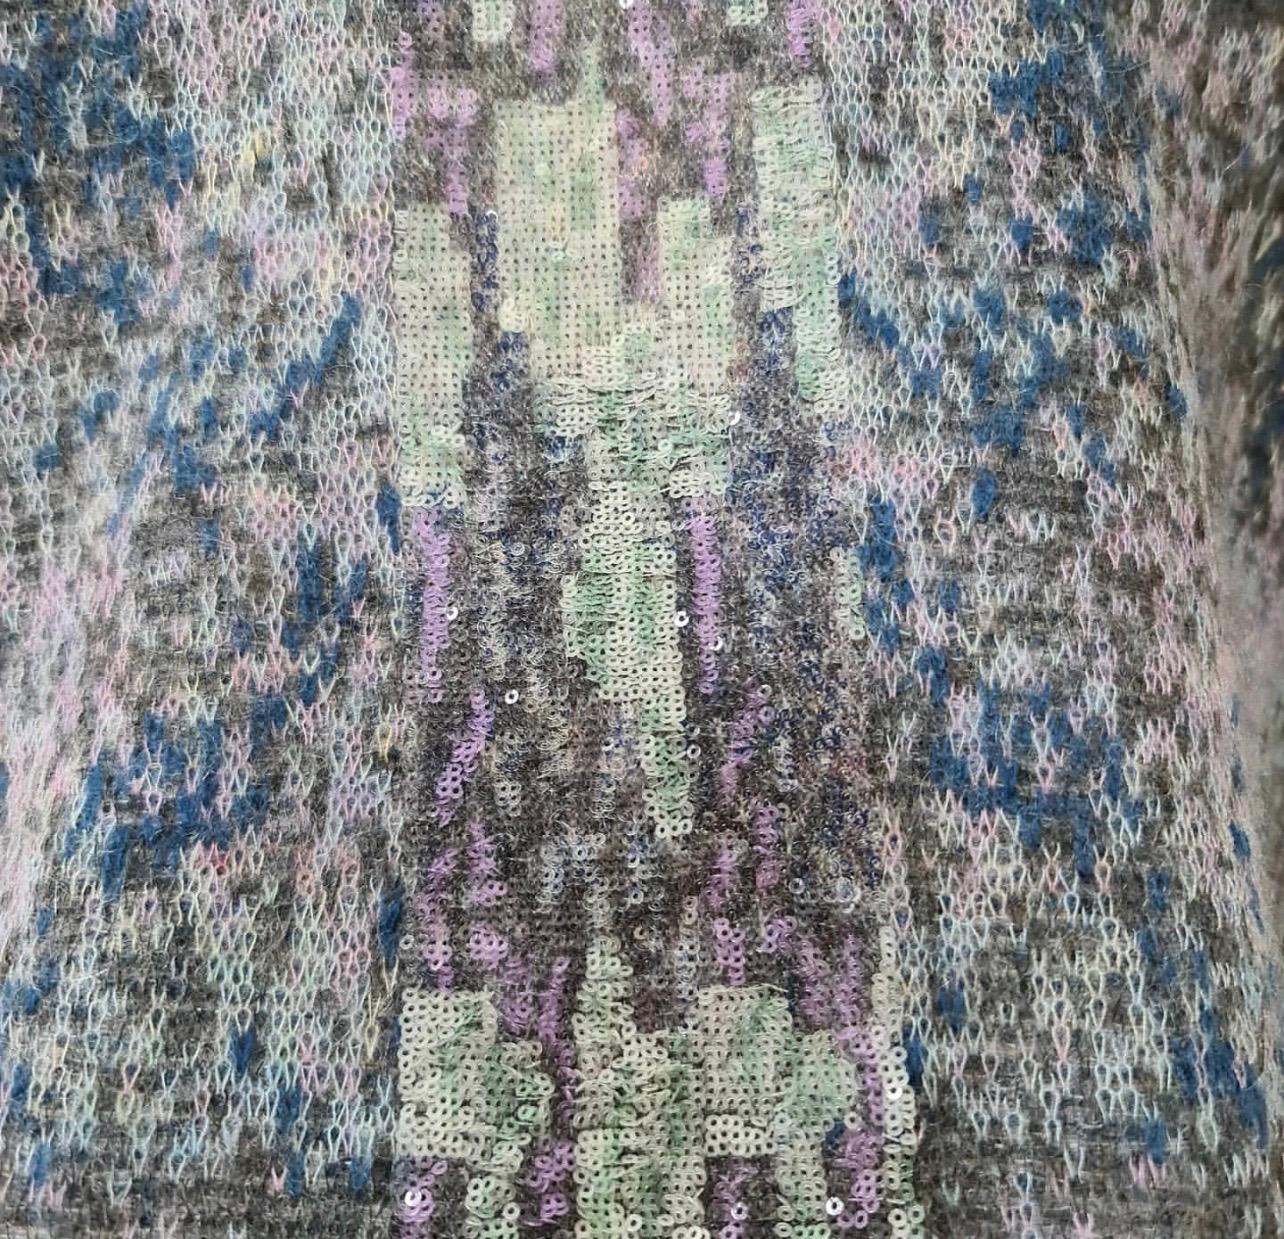 chanel multicolor sweater